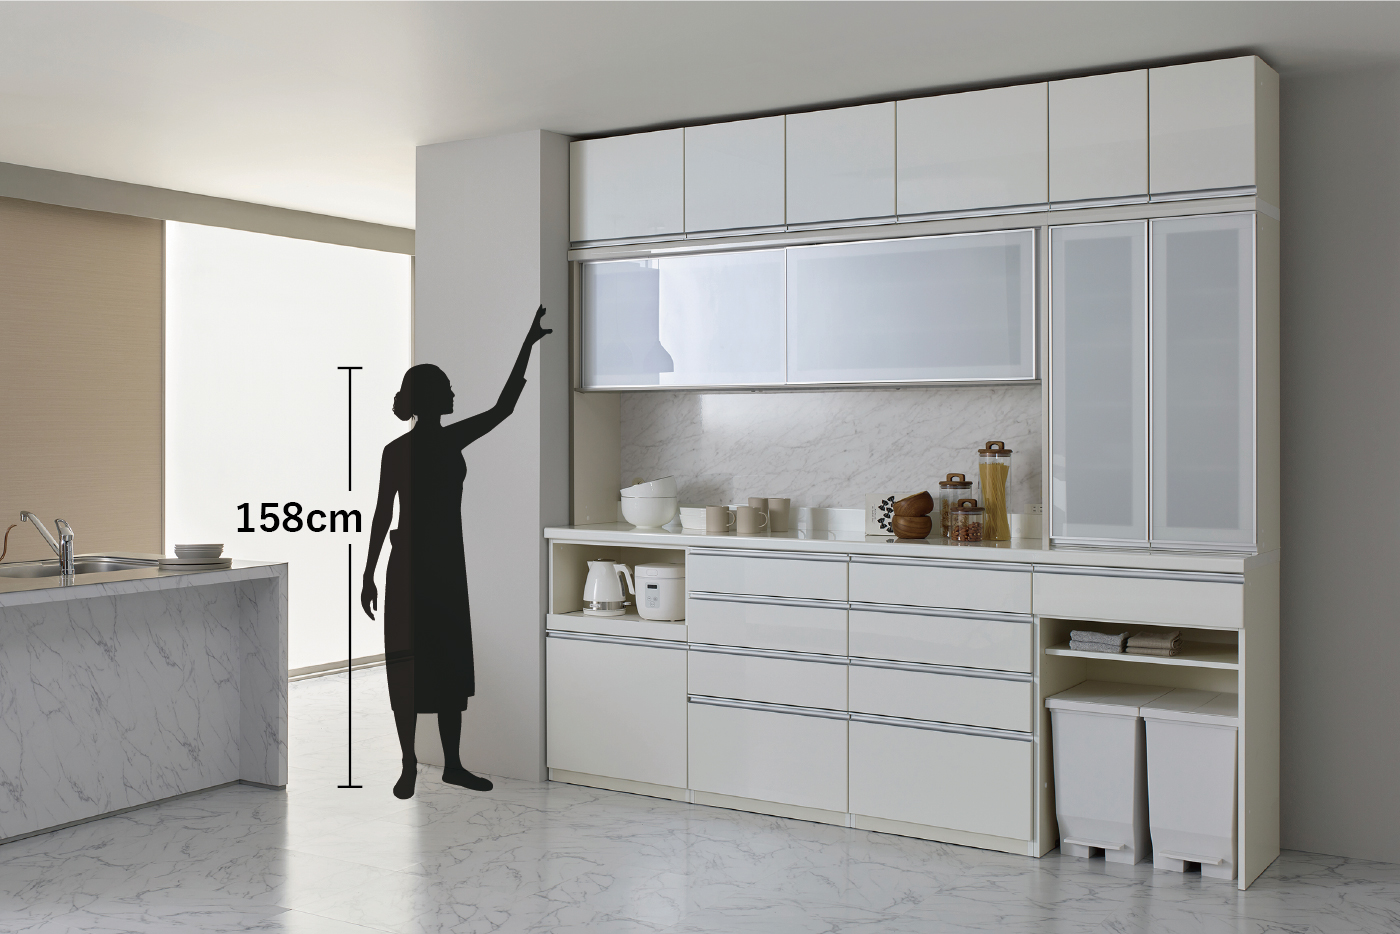 パモウナ NEシリーズ 食器棚 ハイカウンター上段フィラー付き - 家具 